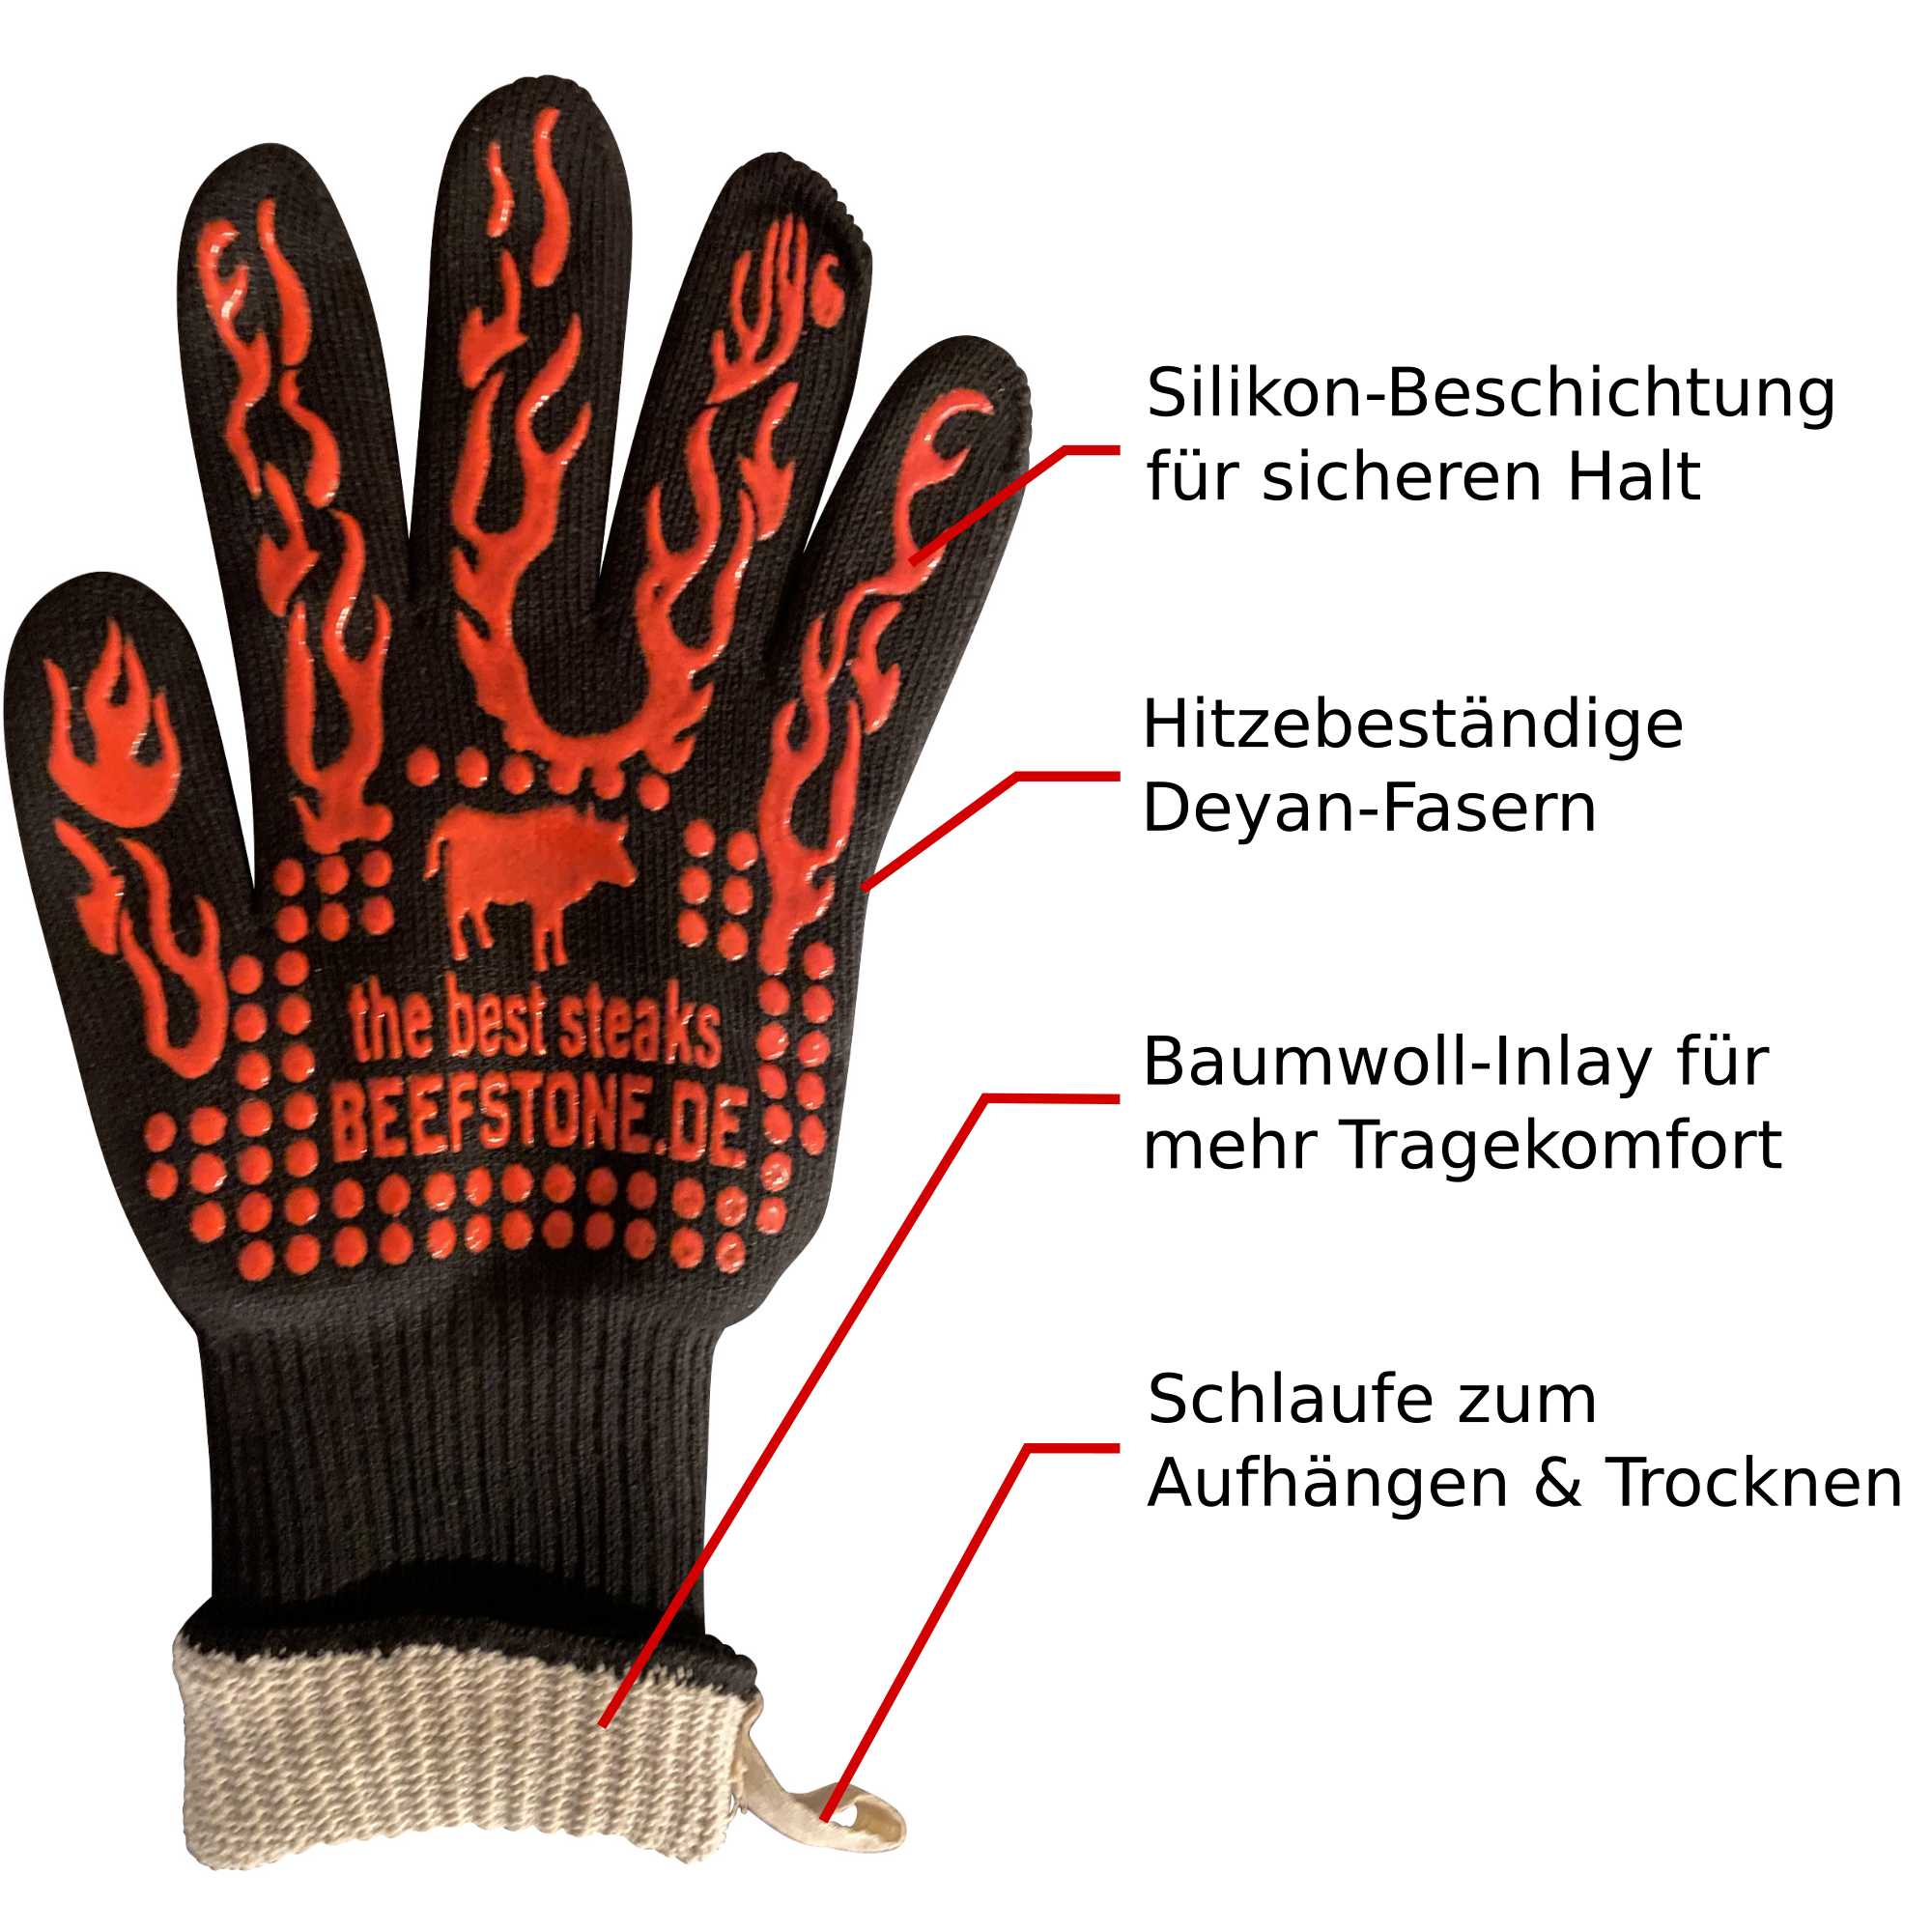 Feuerfeste Handschuhe BBQ - Grillhandschuhe by Beefstone - bis 450°C hitzebeständig